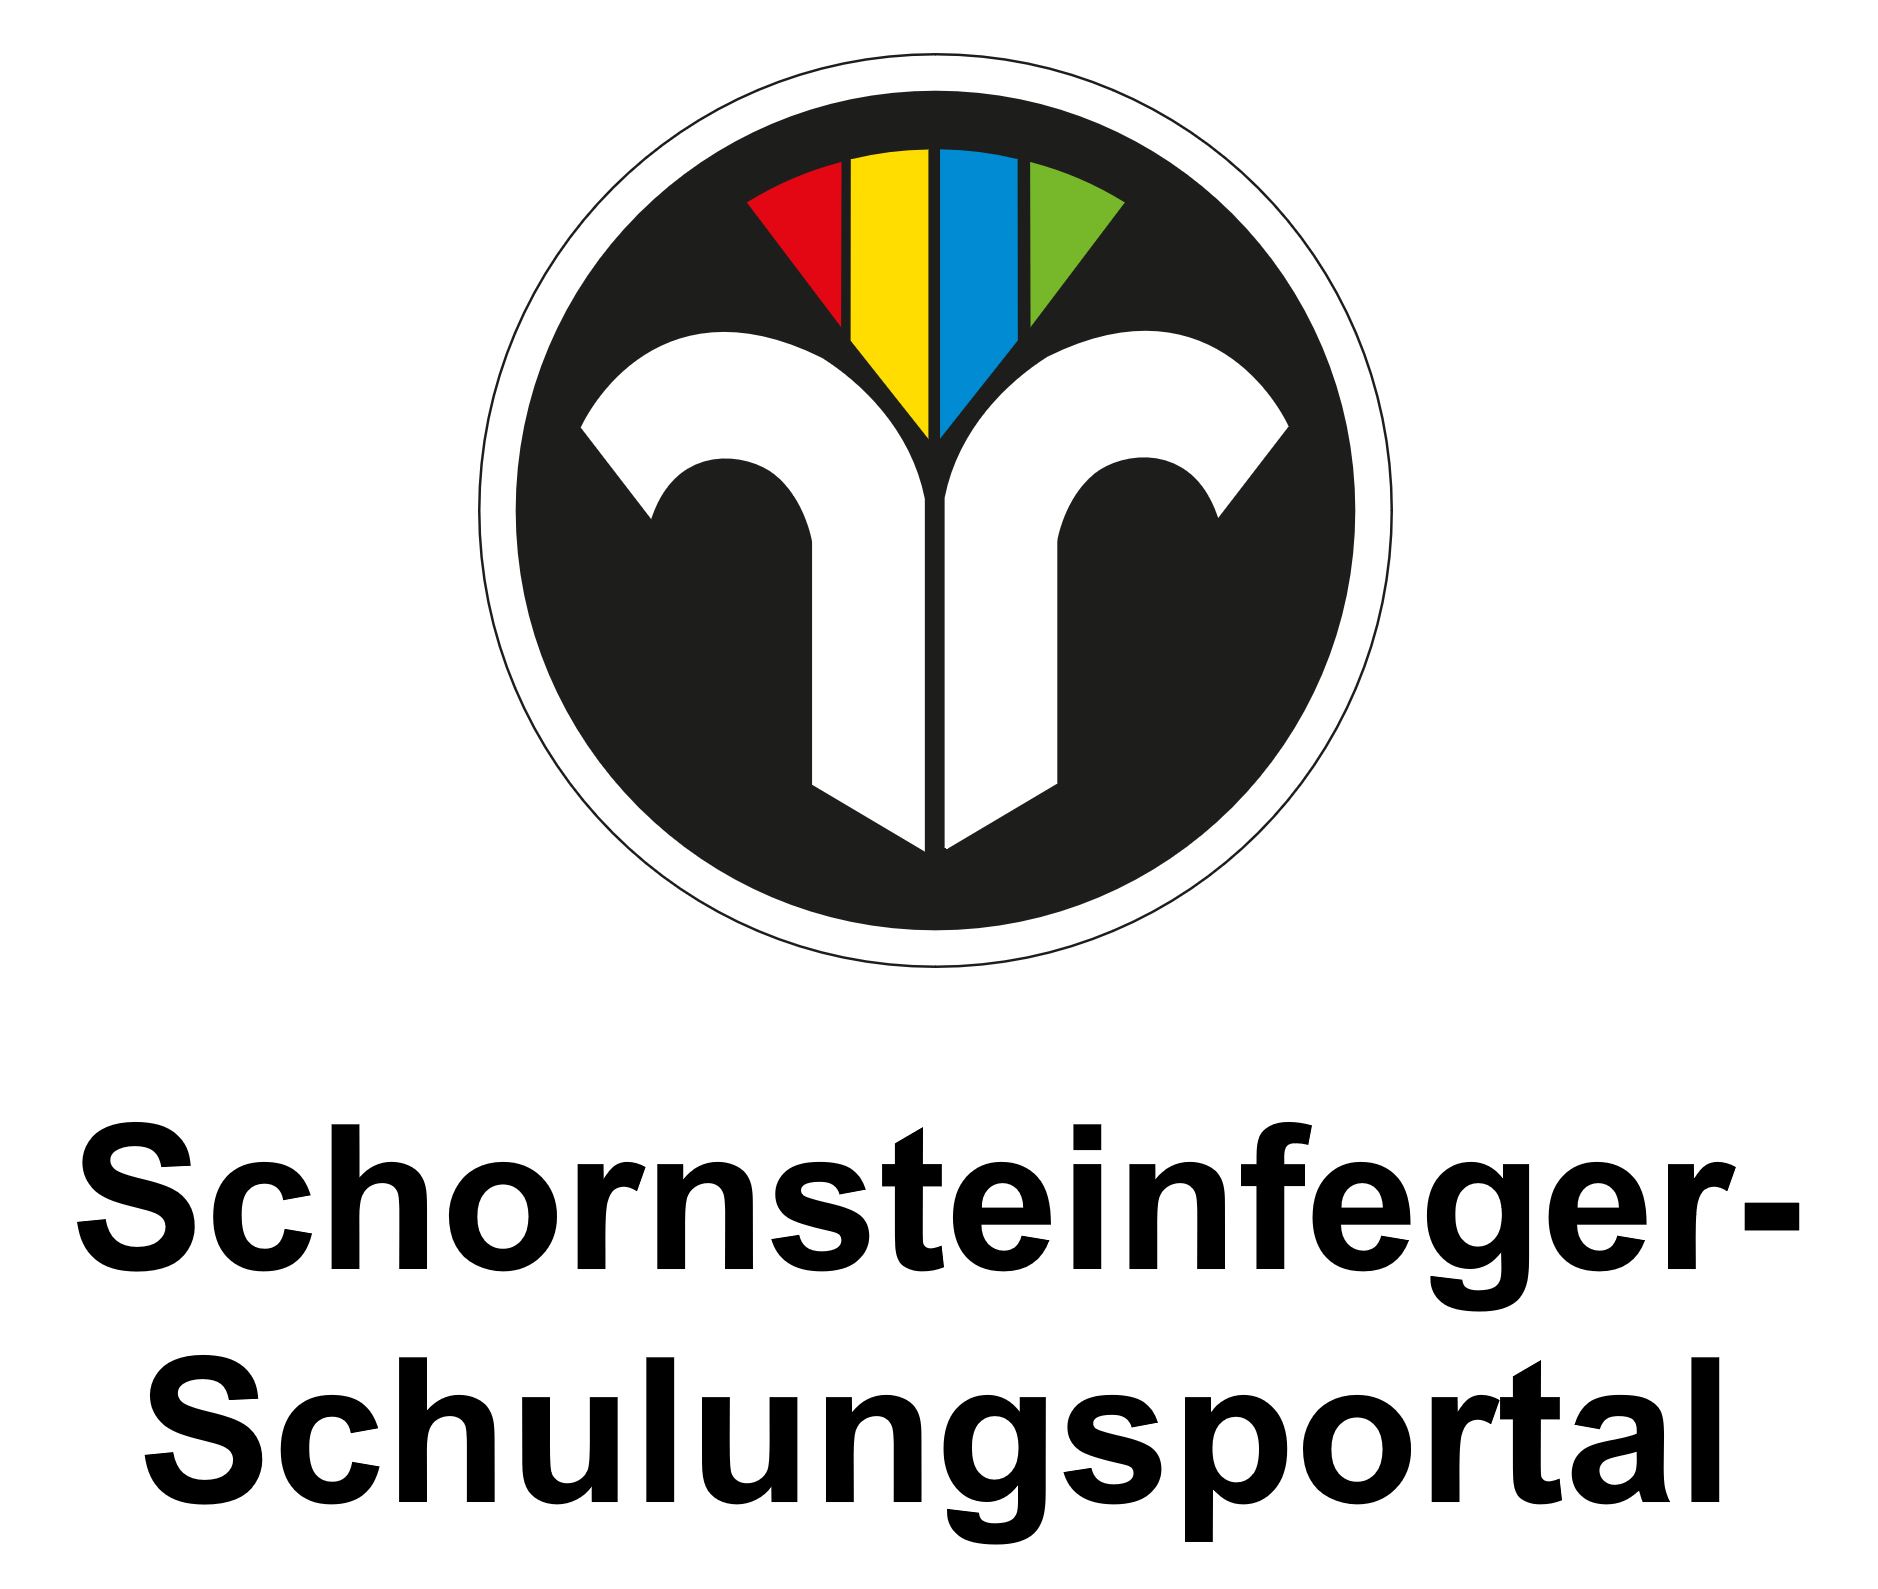 Schornsteinfeger-Schulungsportal